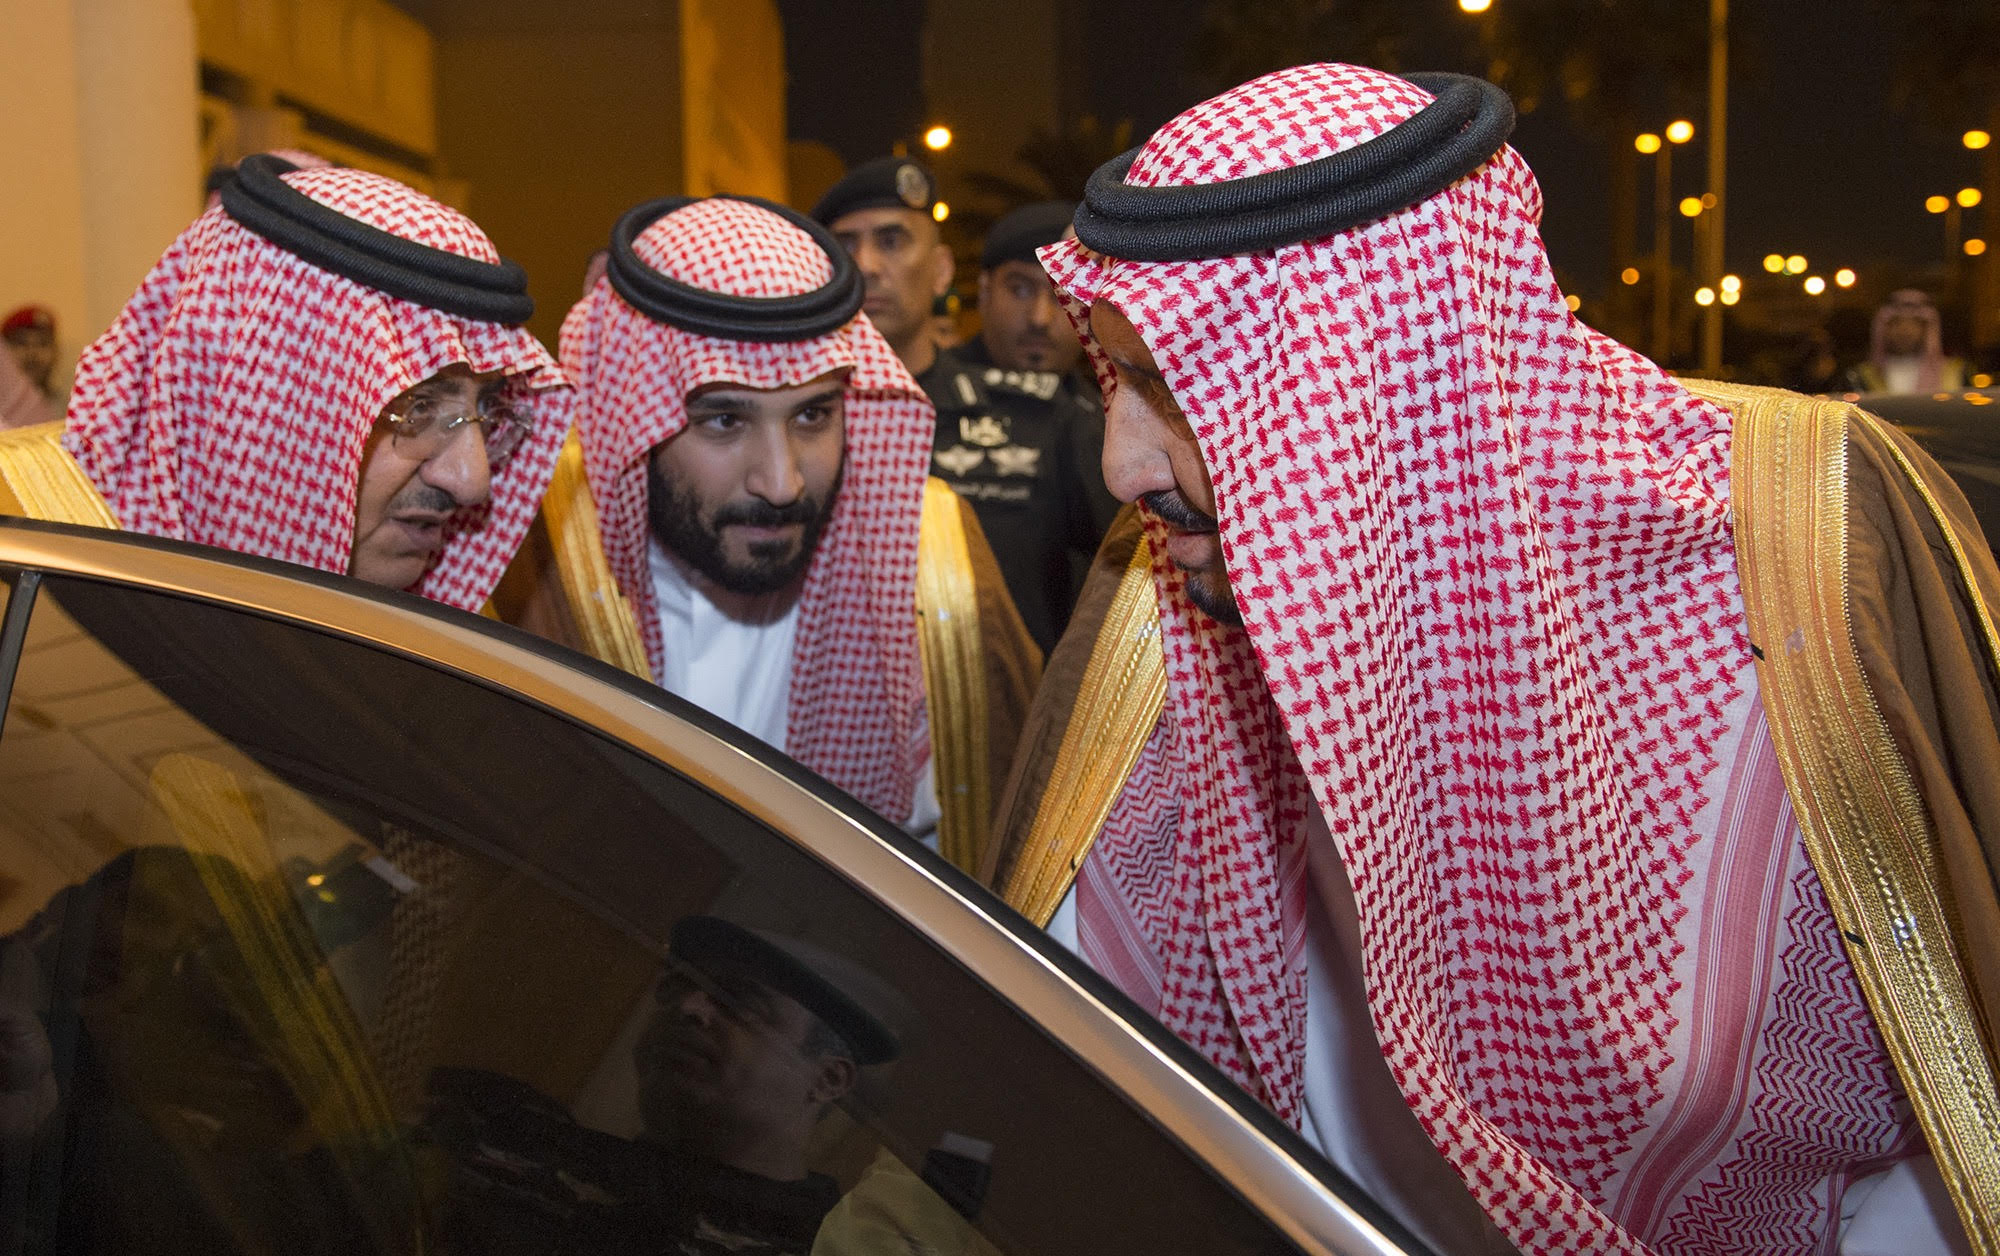 الملك سلمان مغرداً : وطننا رمز راسخ بجذوره الإسلامية والعربية ومكانته الدولية